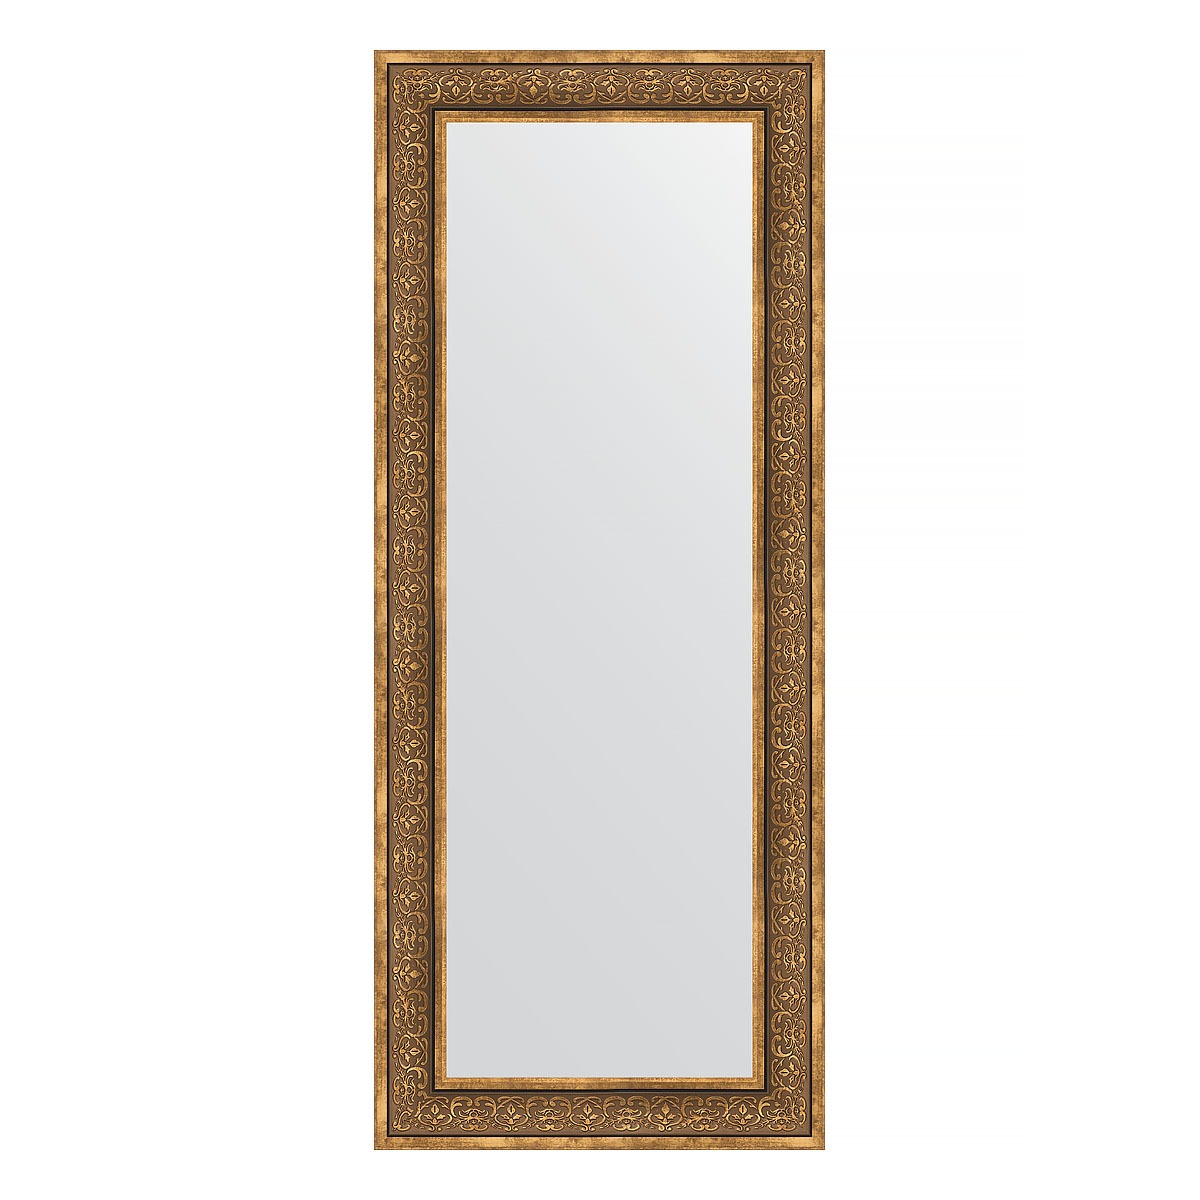 Зеркало в багетной раме Evoform вензель бронзовый 101 мм 63х153 см зеркало 79х109 см вензель бронзовый evoform exclusive by 3474